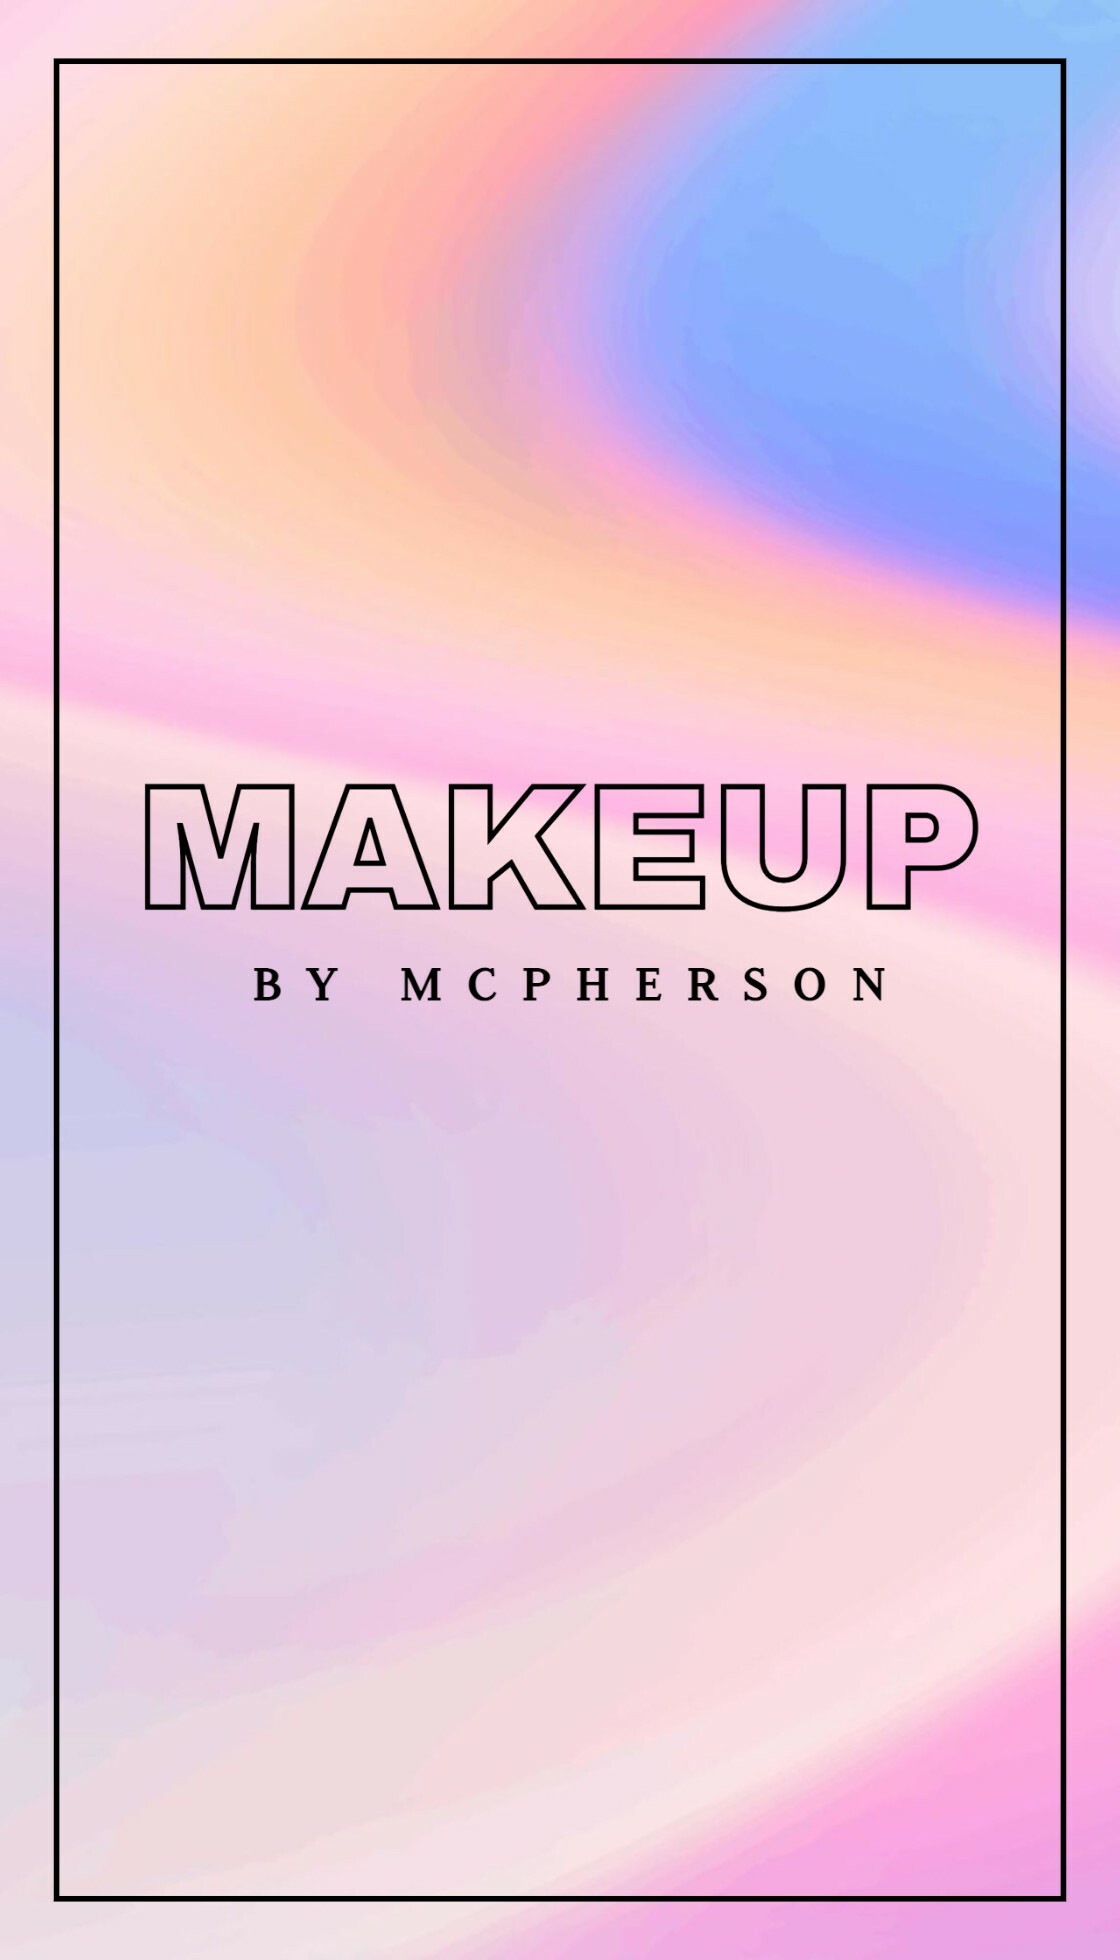 Creative Makeup Artist Business Card template